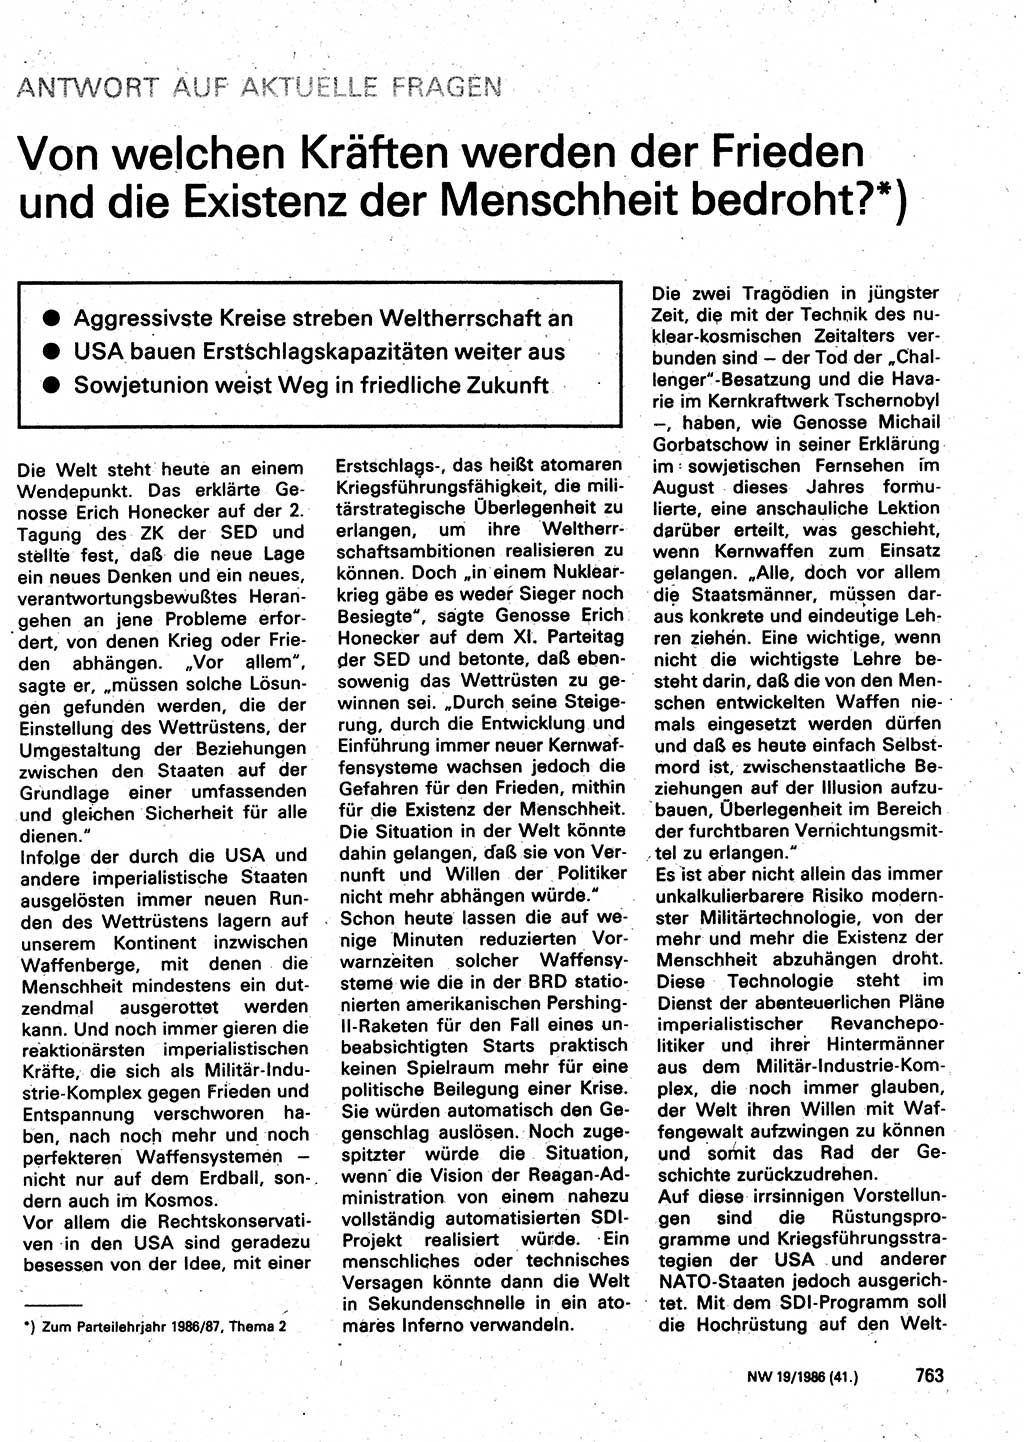 Neuer Weg (NW), Organ des Zentralkomitees (ZK) der SED (Sozialistische Einheitspartei Deutschlands) für Fragen des Parteilebens, 41. Jahrgang [Deutsche Demokratische Republik (DDR)] 1986, Seite 763 (NW ZK SED DDR 1986, S. 763)